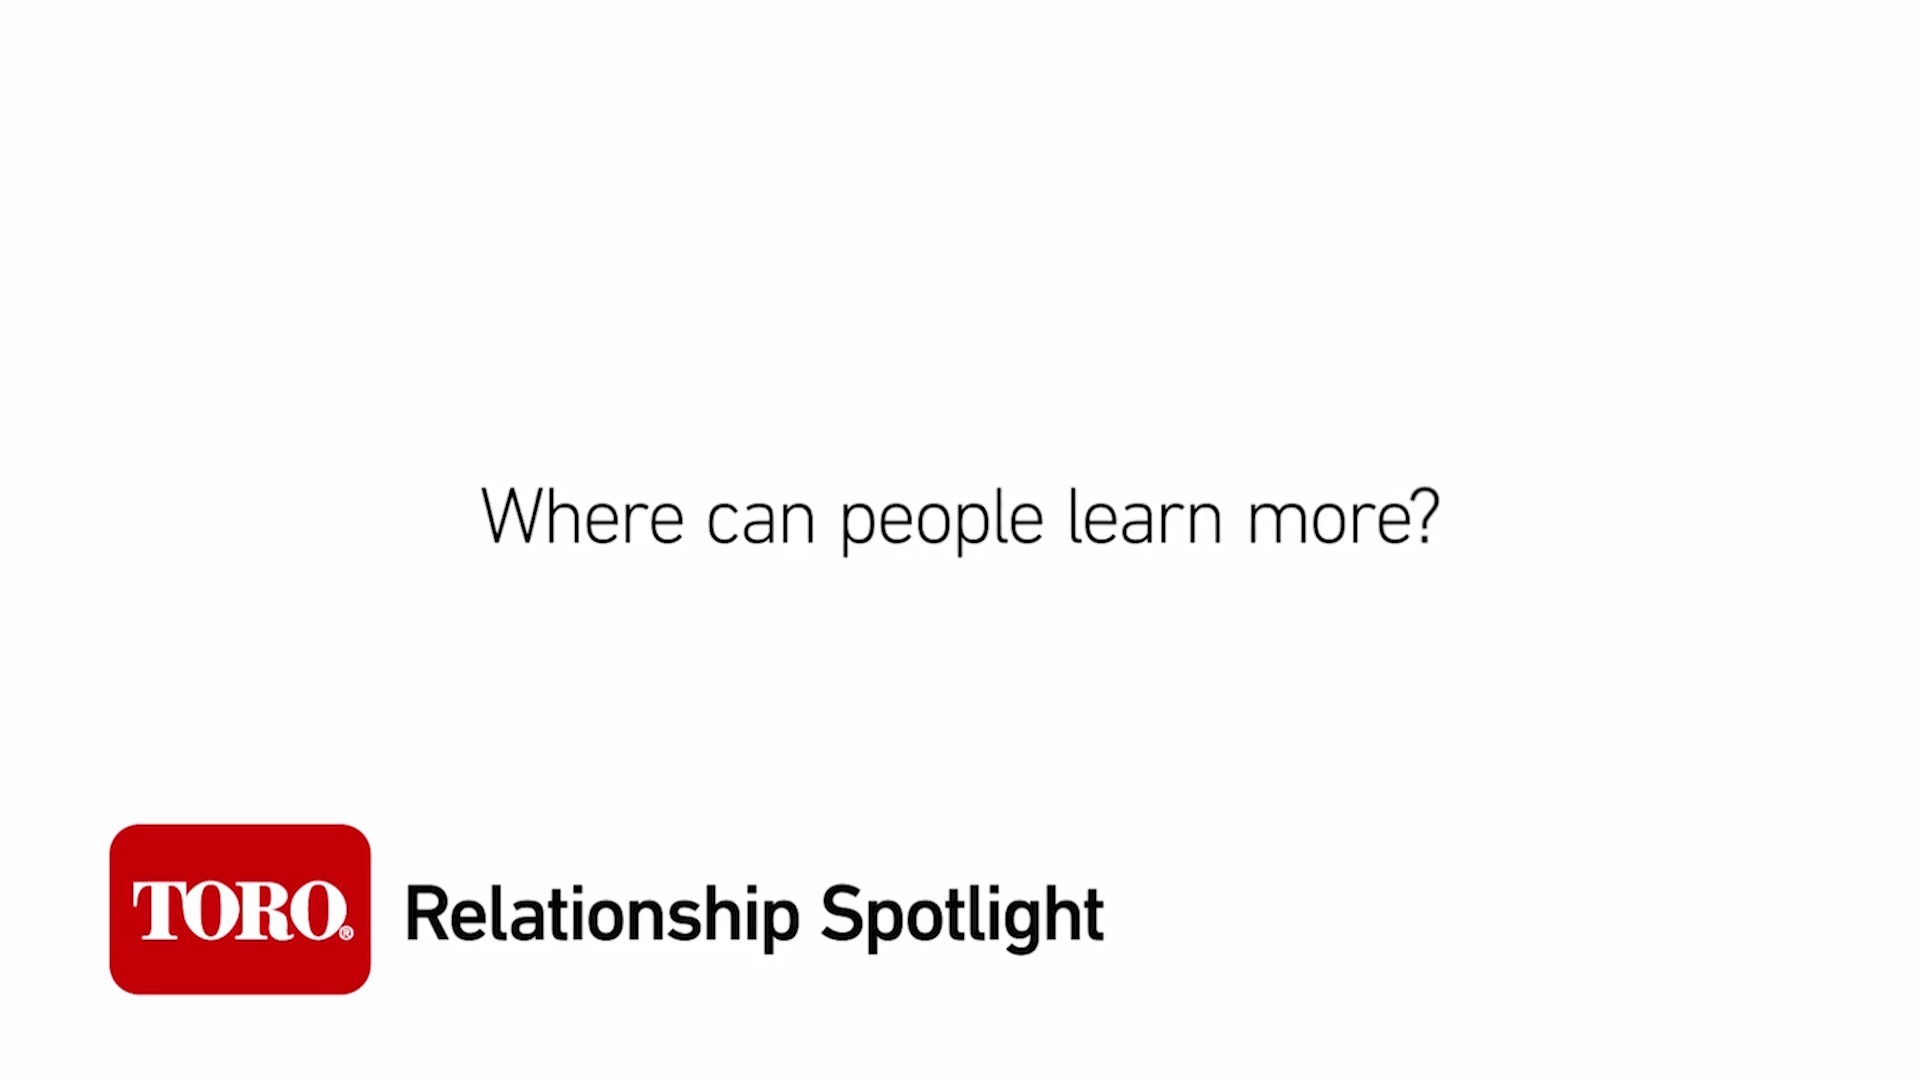 Relationship Spotlight: Learn More